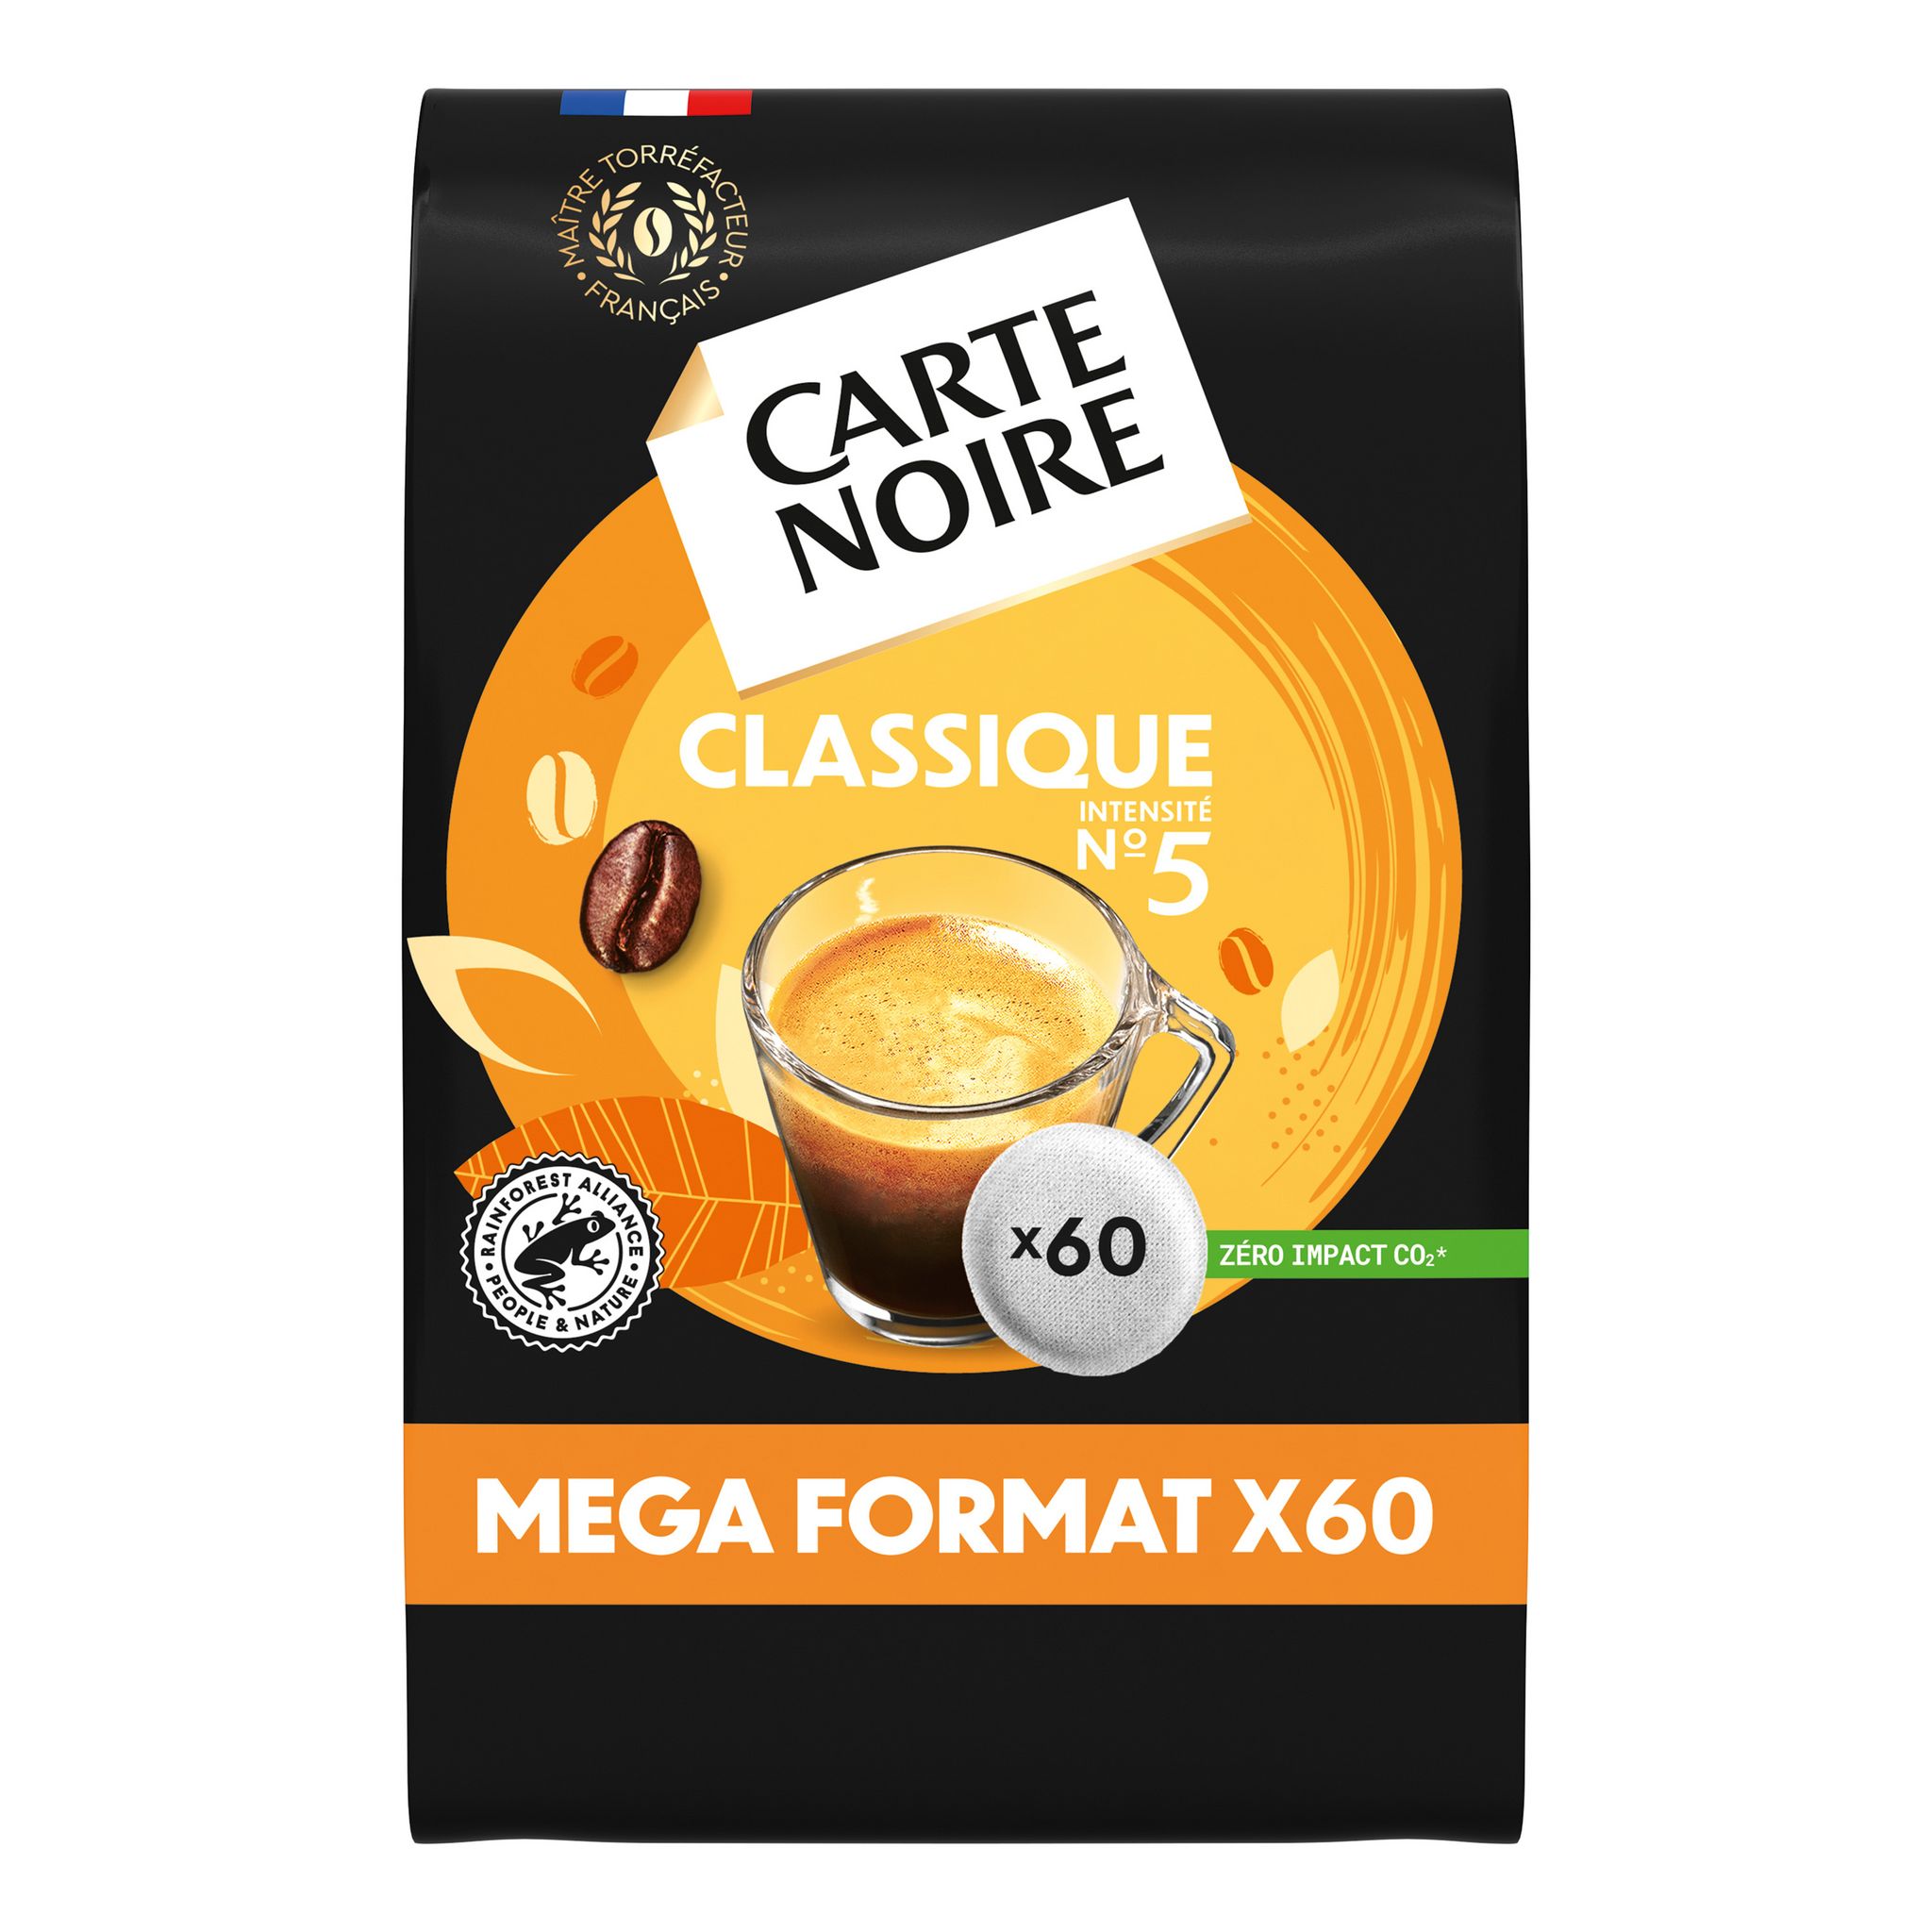 Café Senséo doux dosette x60 - 416g